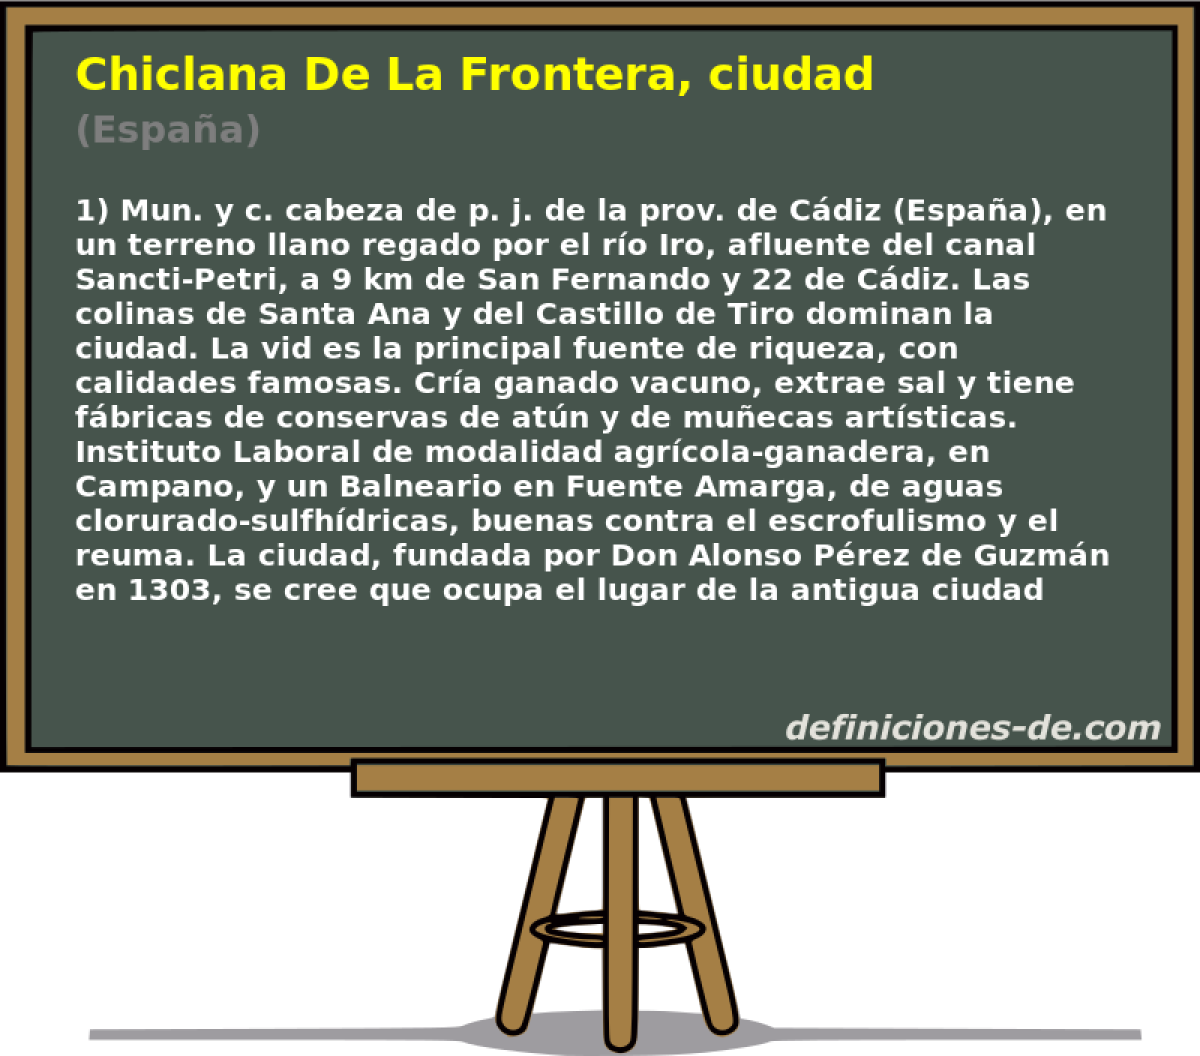 Chiclana De La Frontera, ciudad (Espaa)